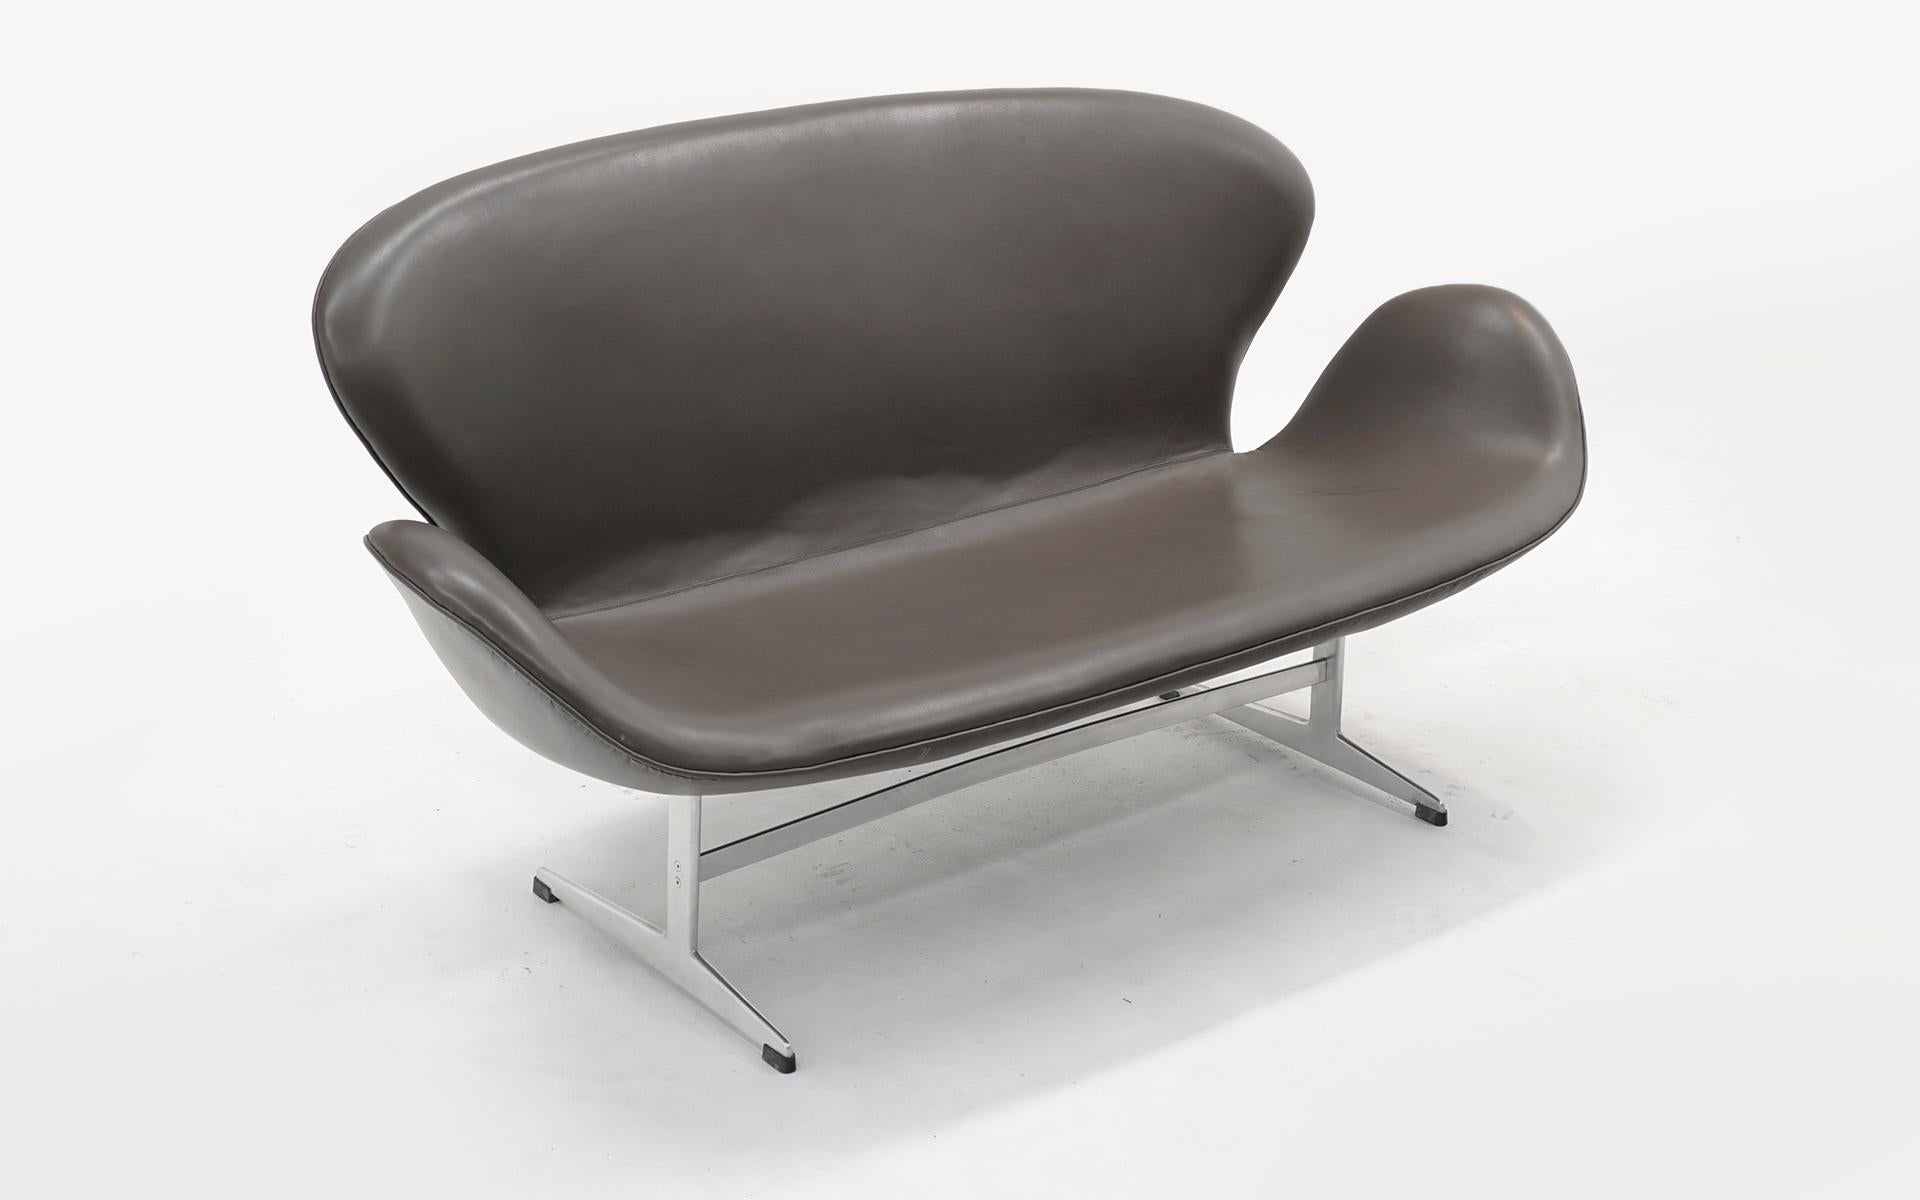 Frühe und seltene Arne Jacobsen Schwan Sofa / Liebessitz / in der ursprünglichen taupe / warm grau Leder. Keine Risse oder Schrammen. Leichtes Verblassen. Sehr guter Originalzustand.